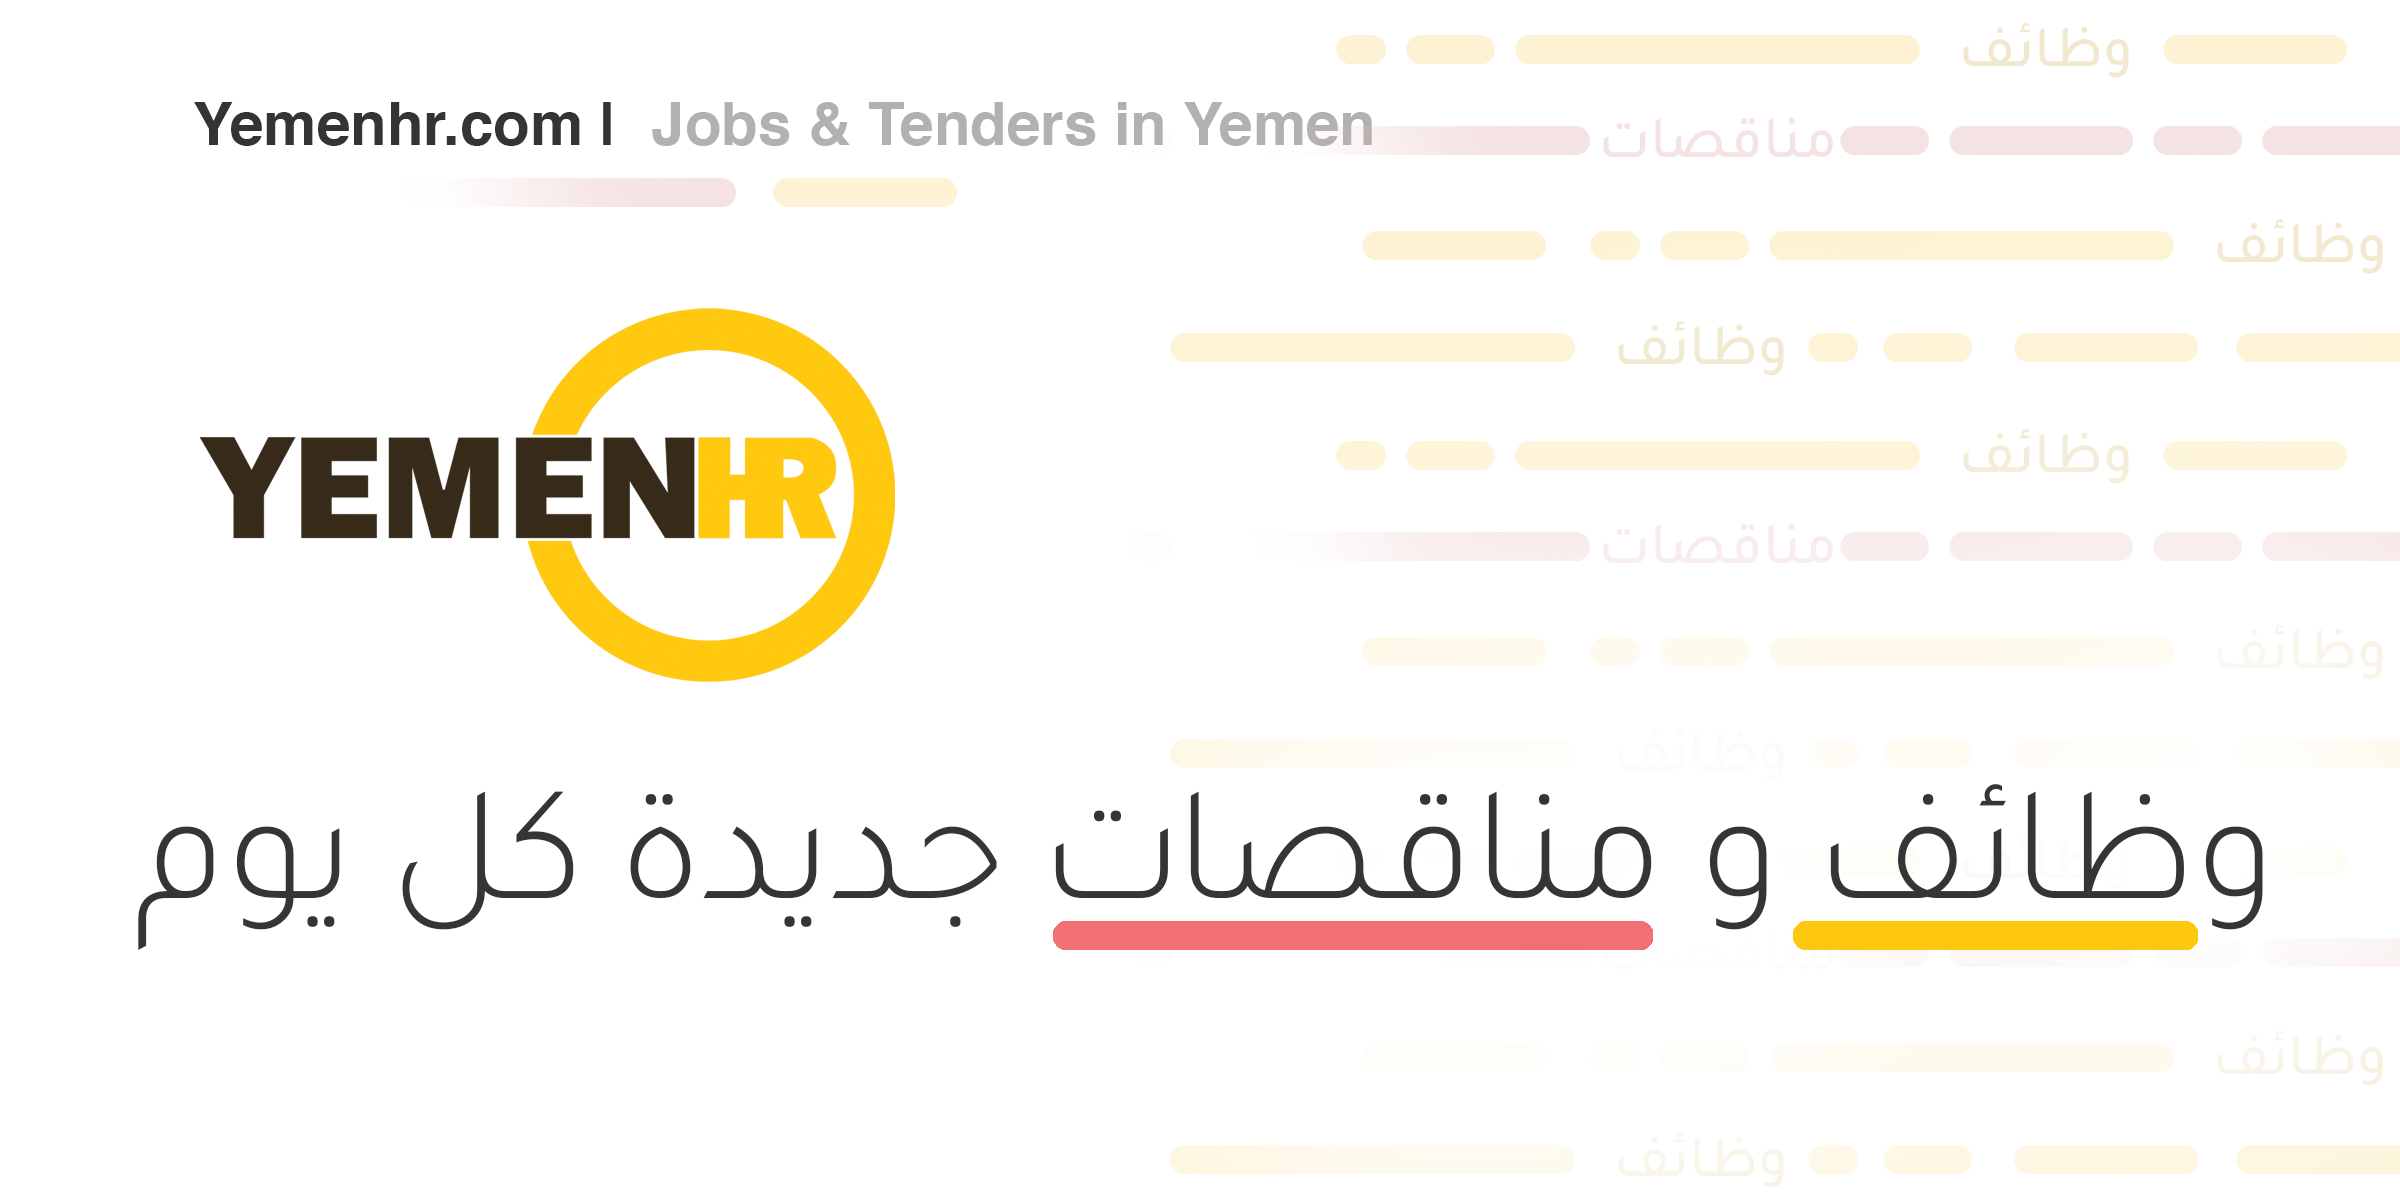 hr jobs yemen